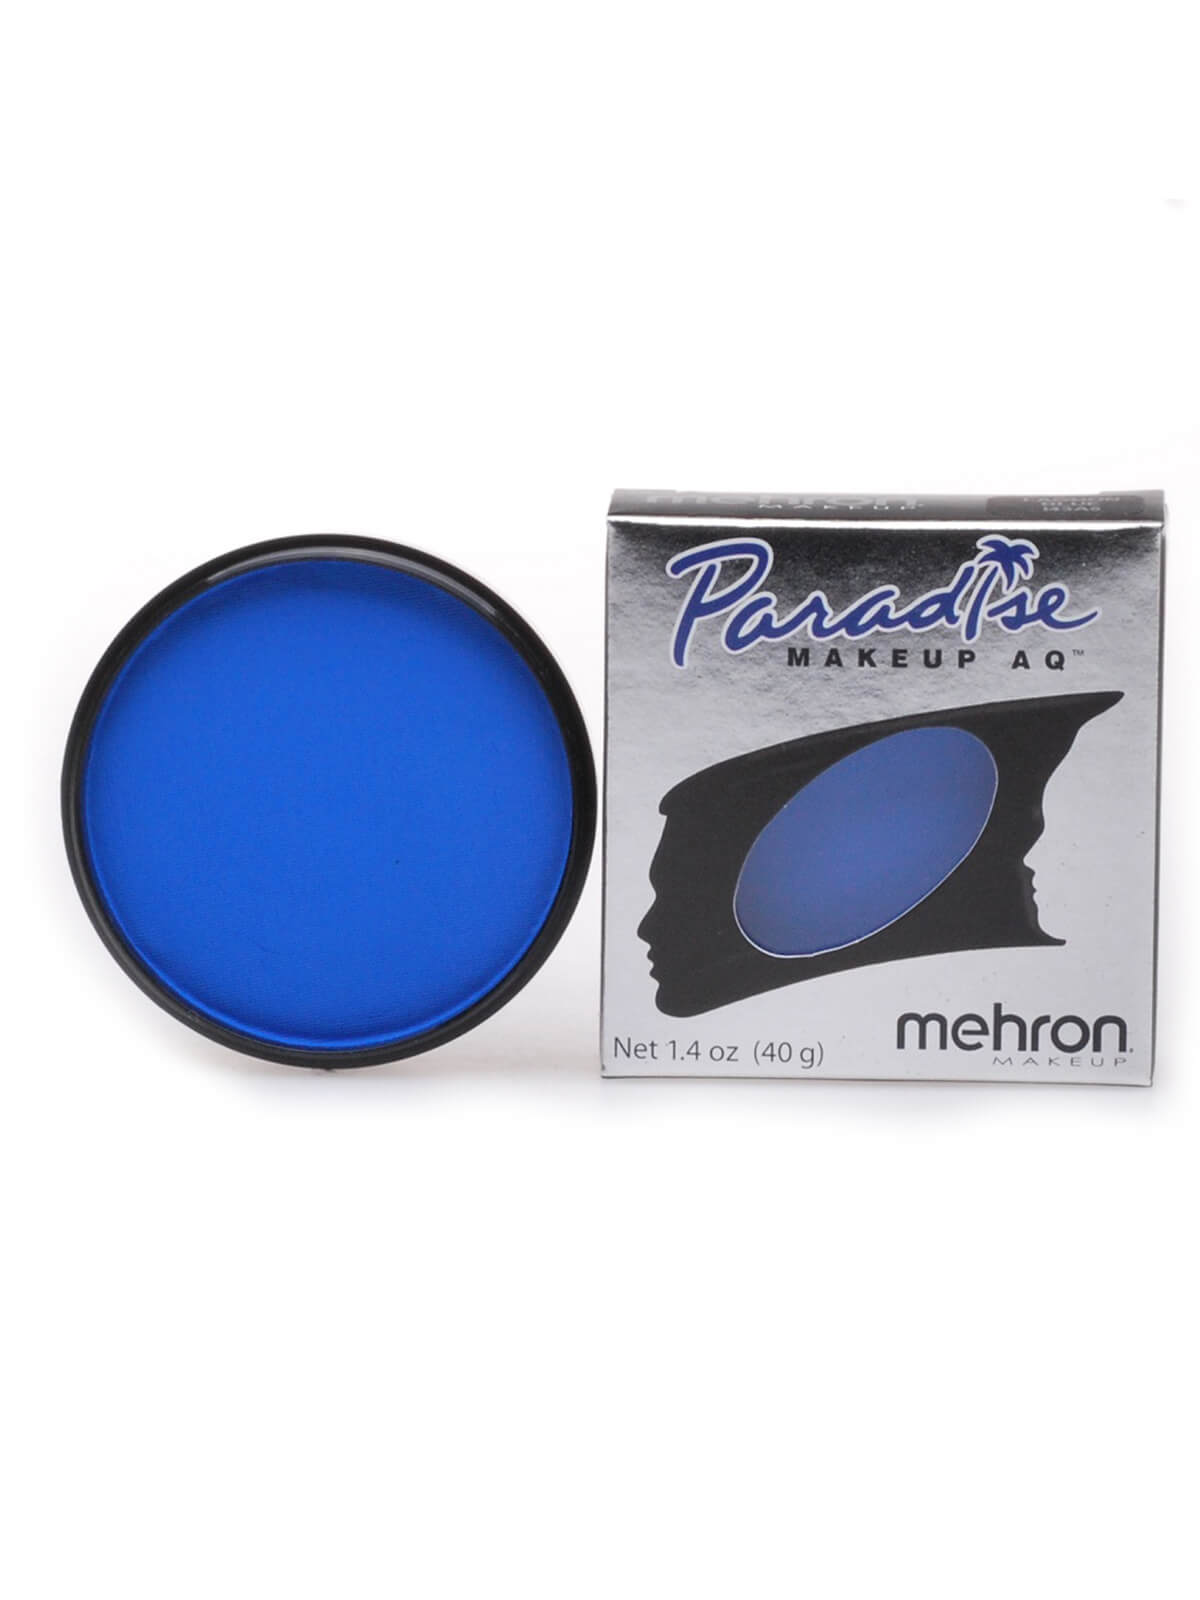 Mehron Paradise Makeup AQ, 1.4oz, Blue Bebe Brillant